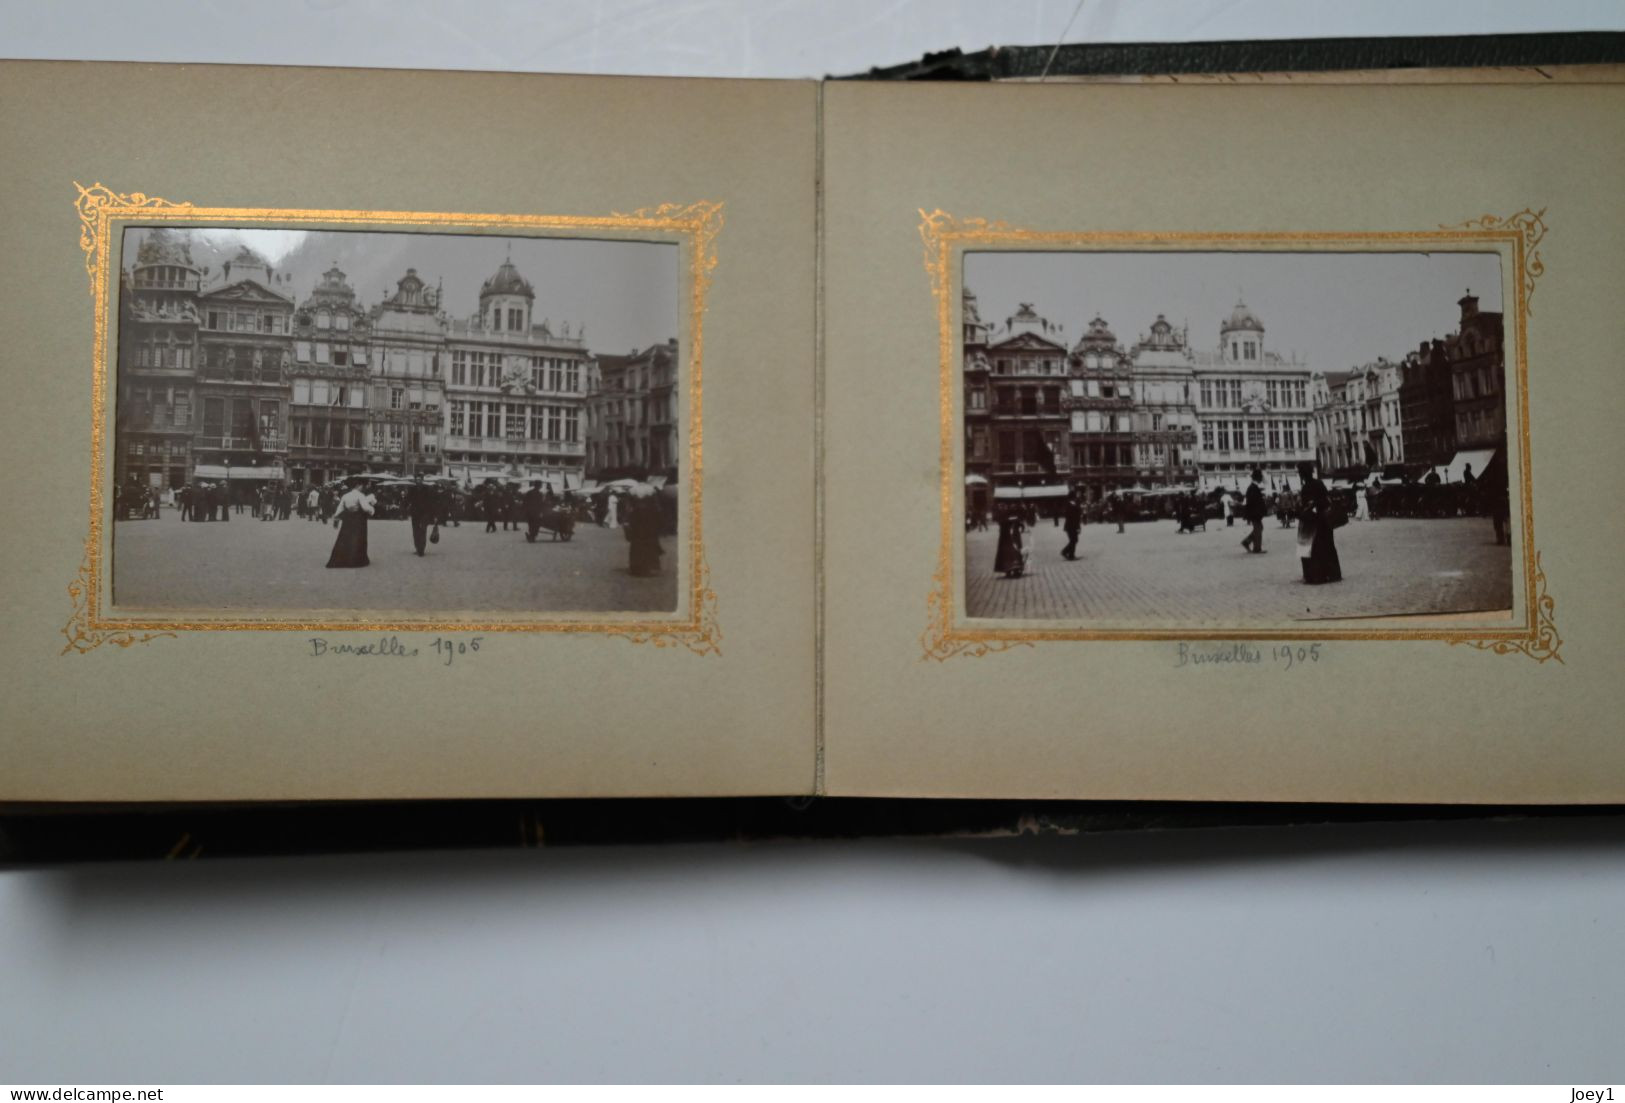 Petit Album photo Boulogne sur mer 1904